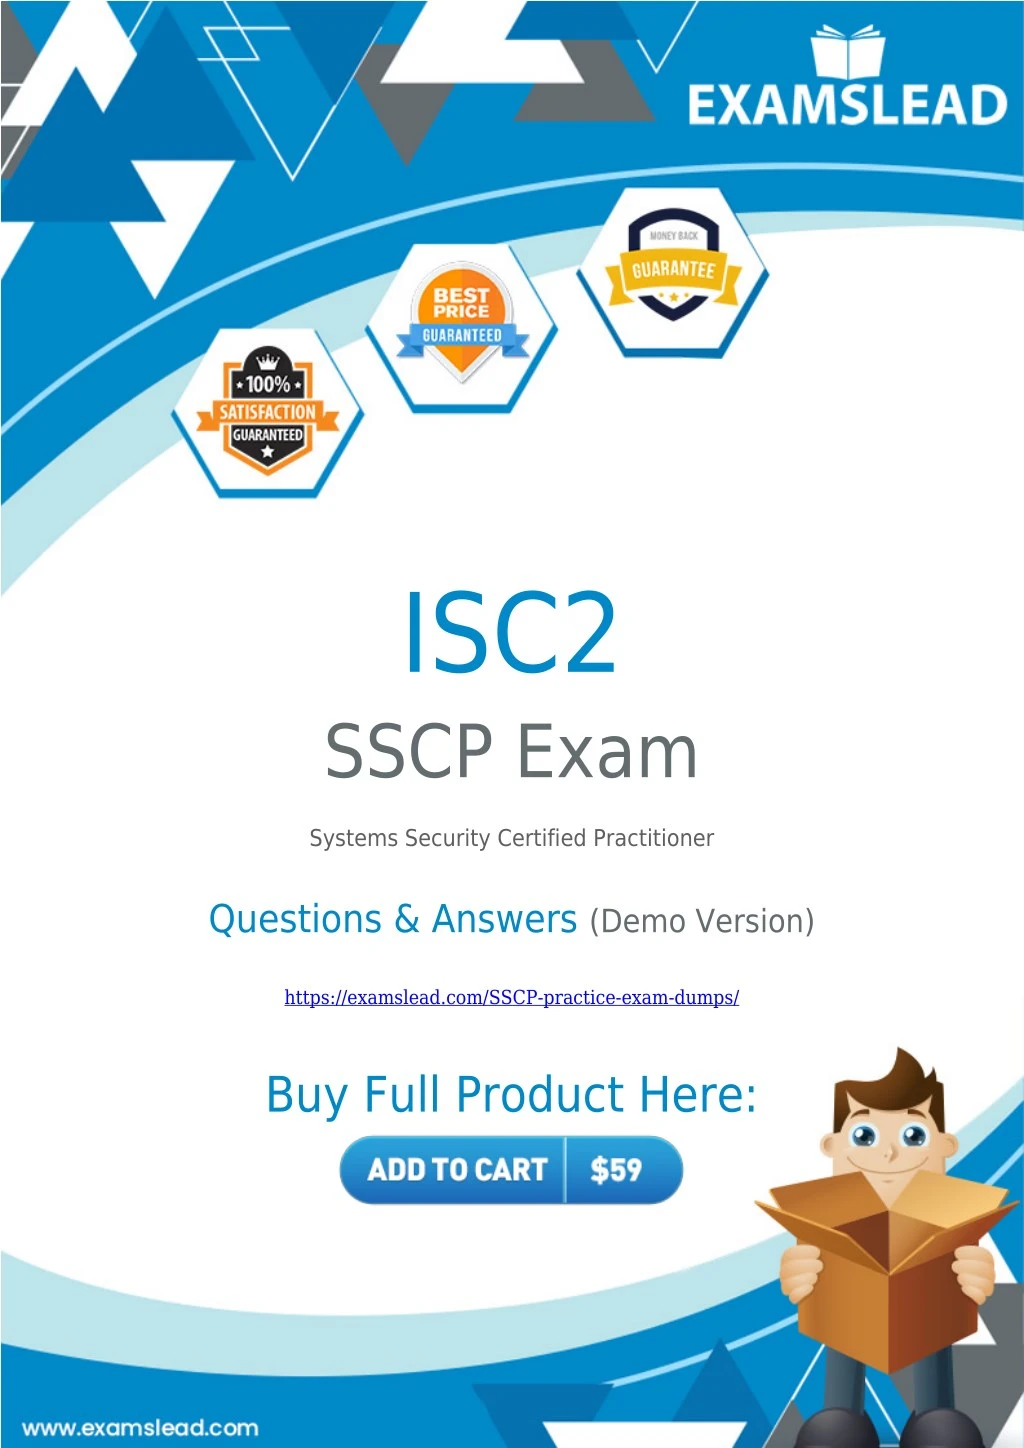 isc2 sscp exam